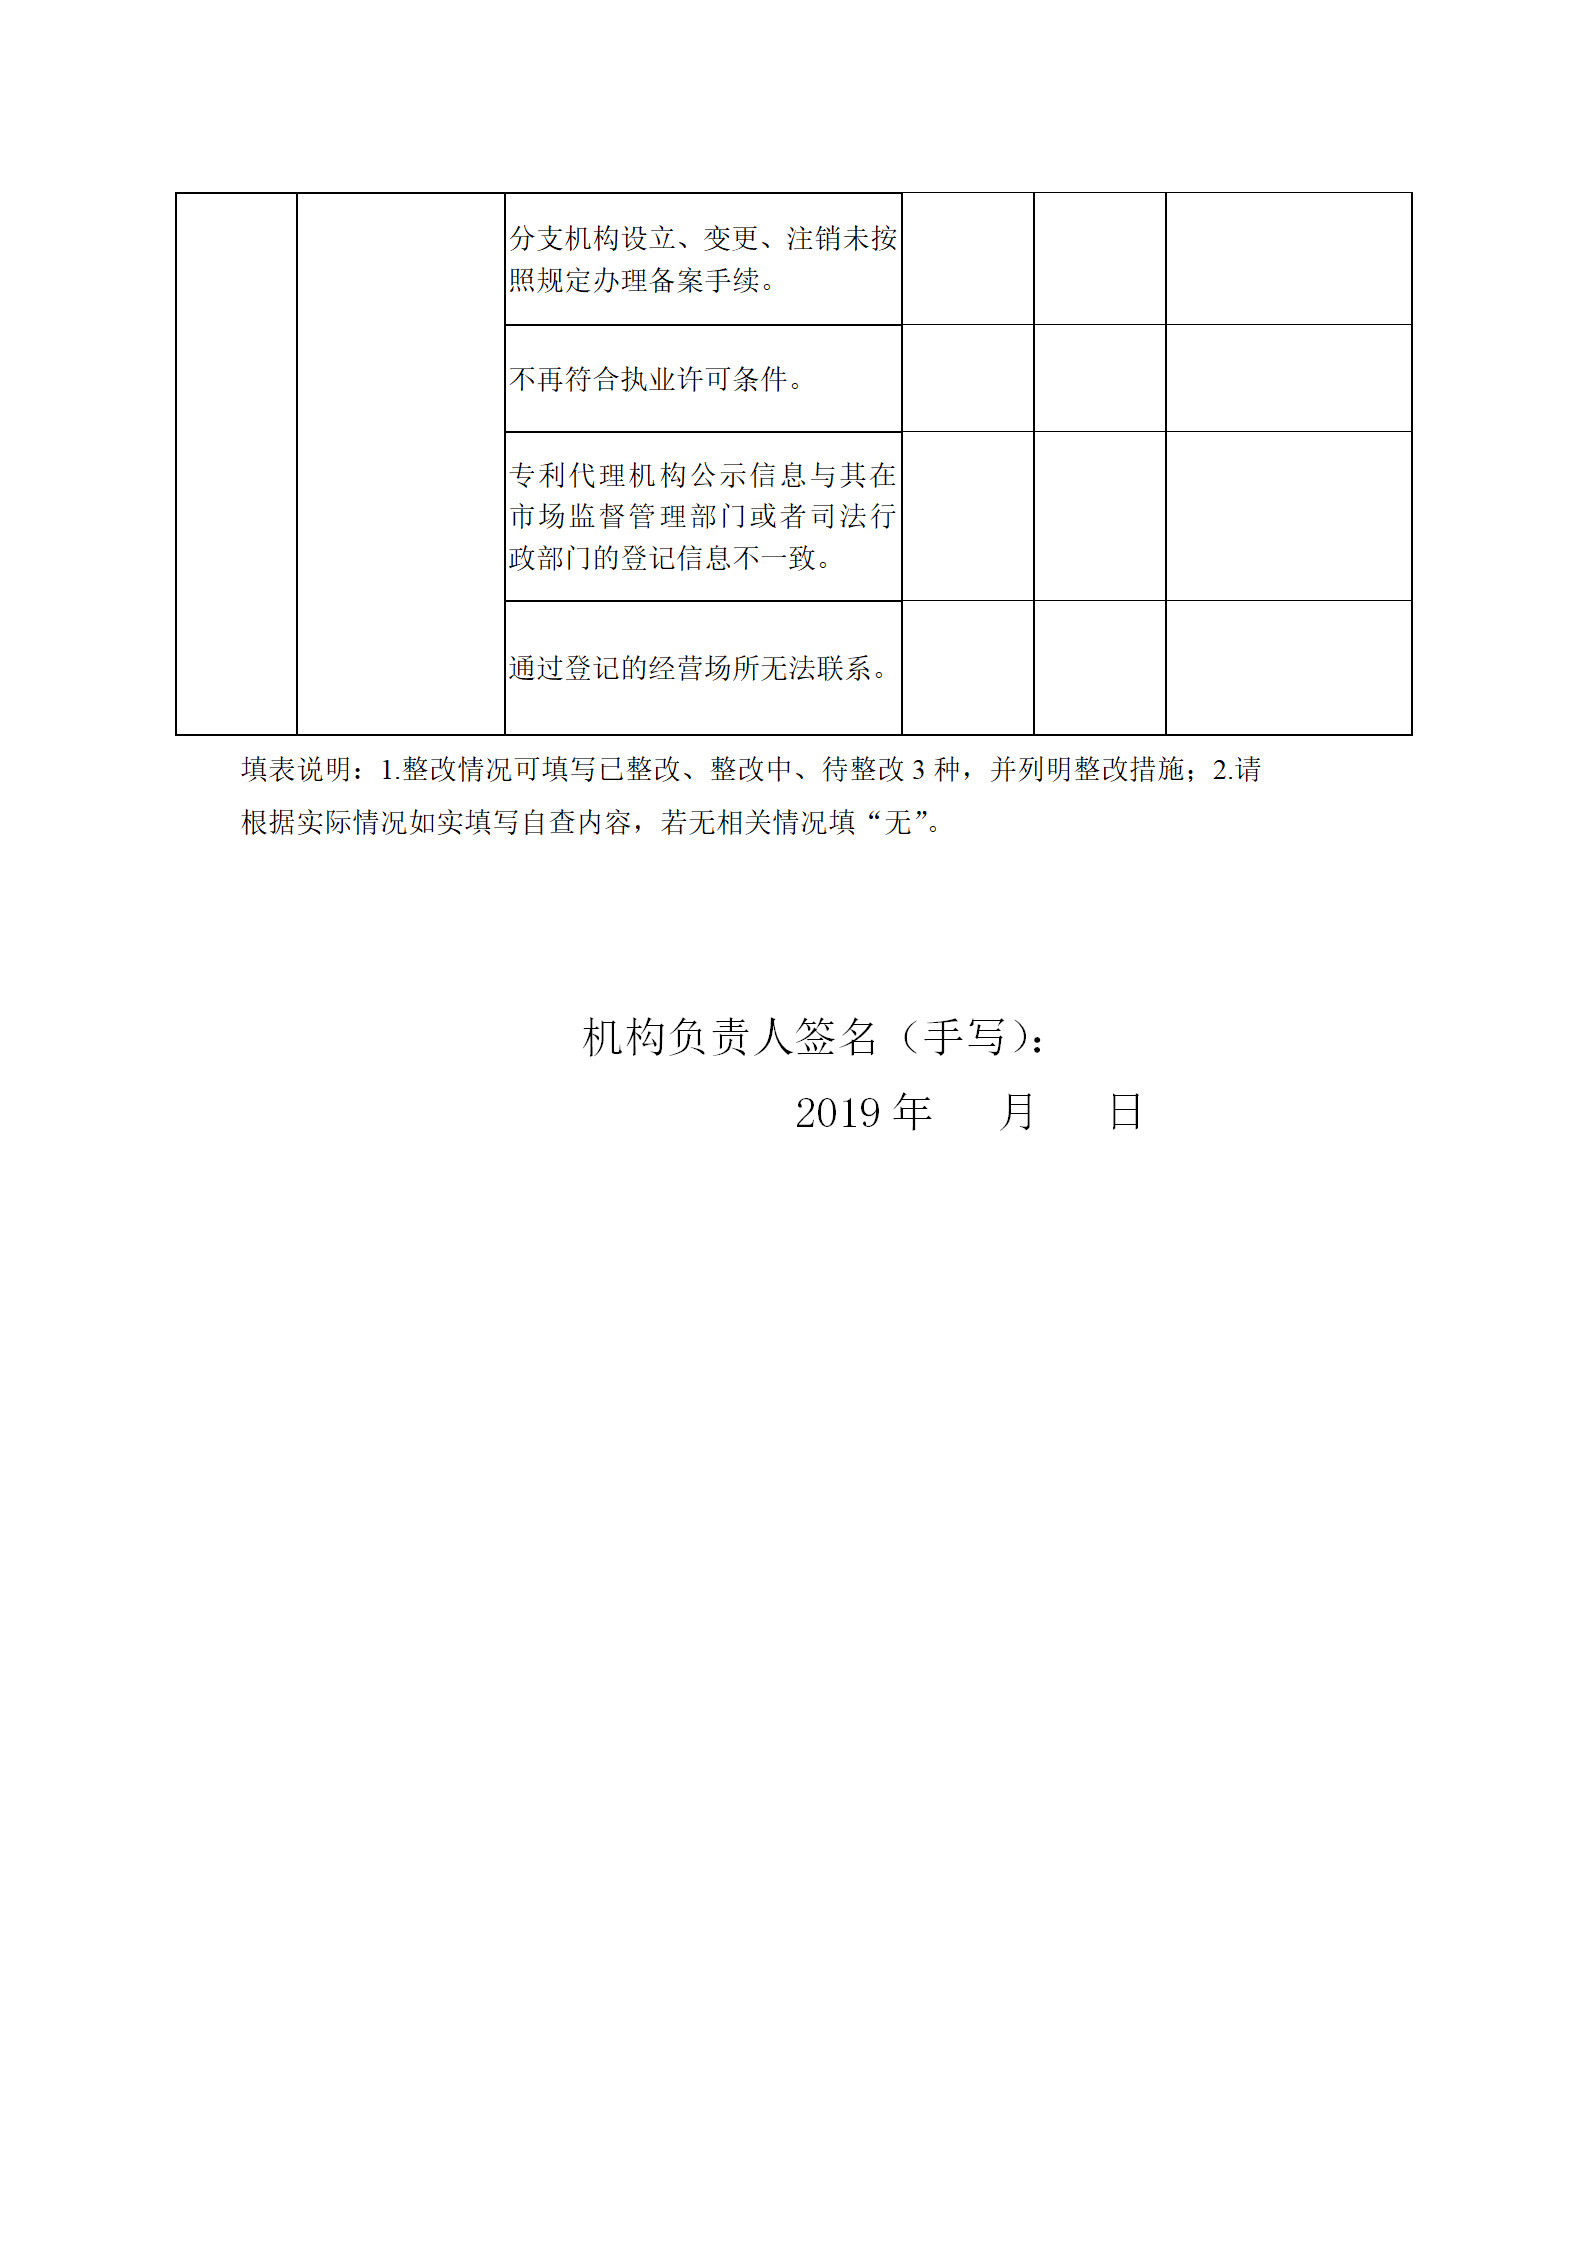 广州开展2019年度专利代理行业“蓝天”专项整治行动